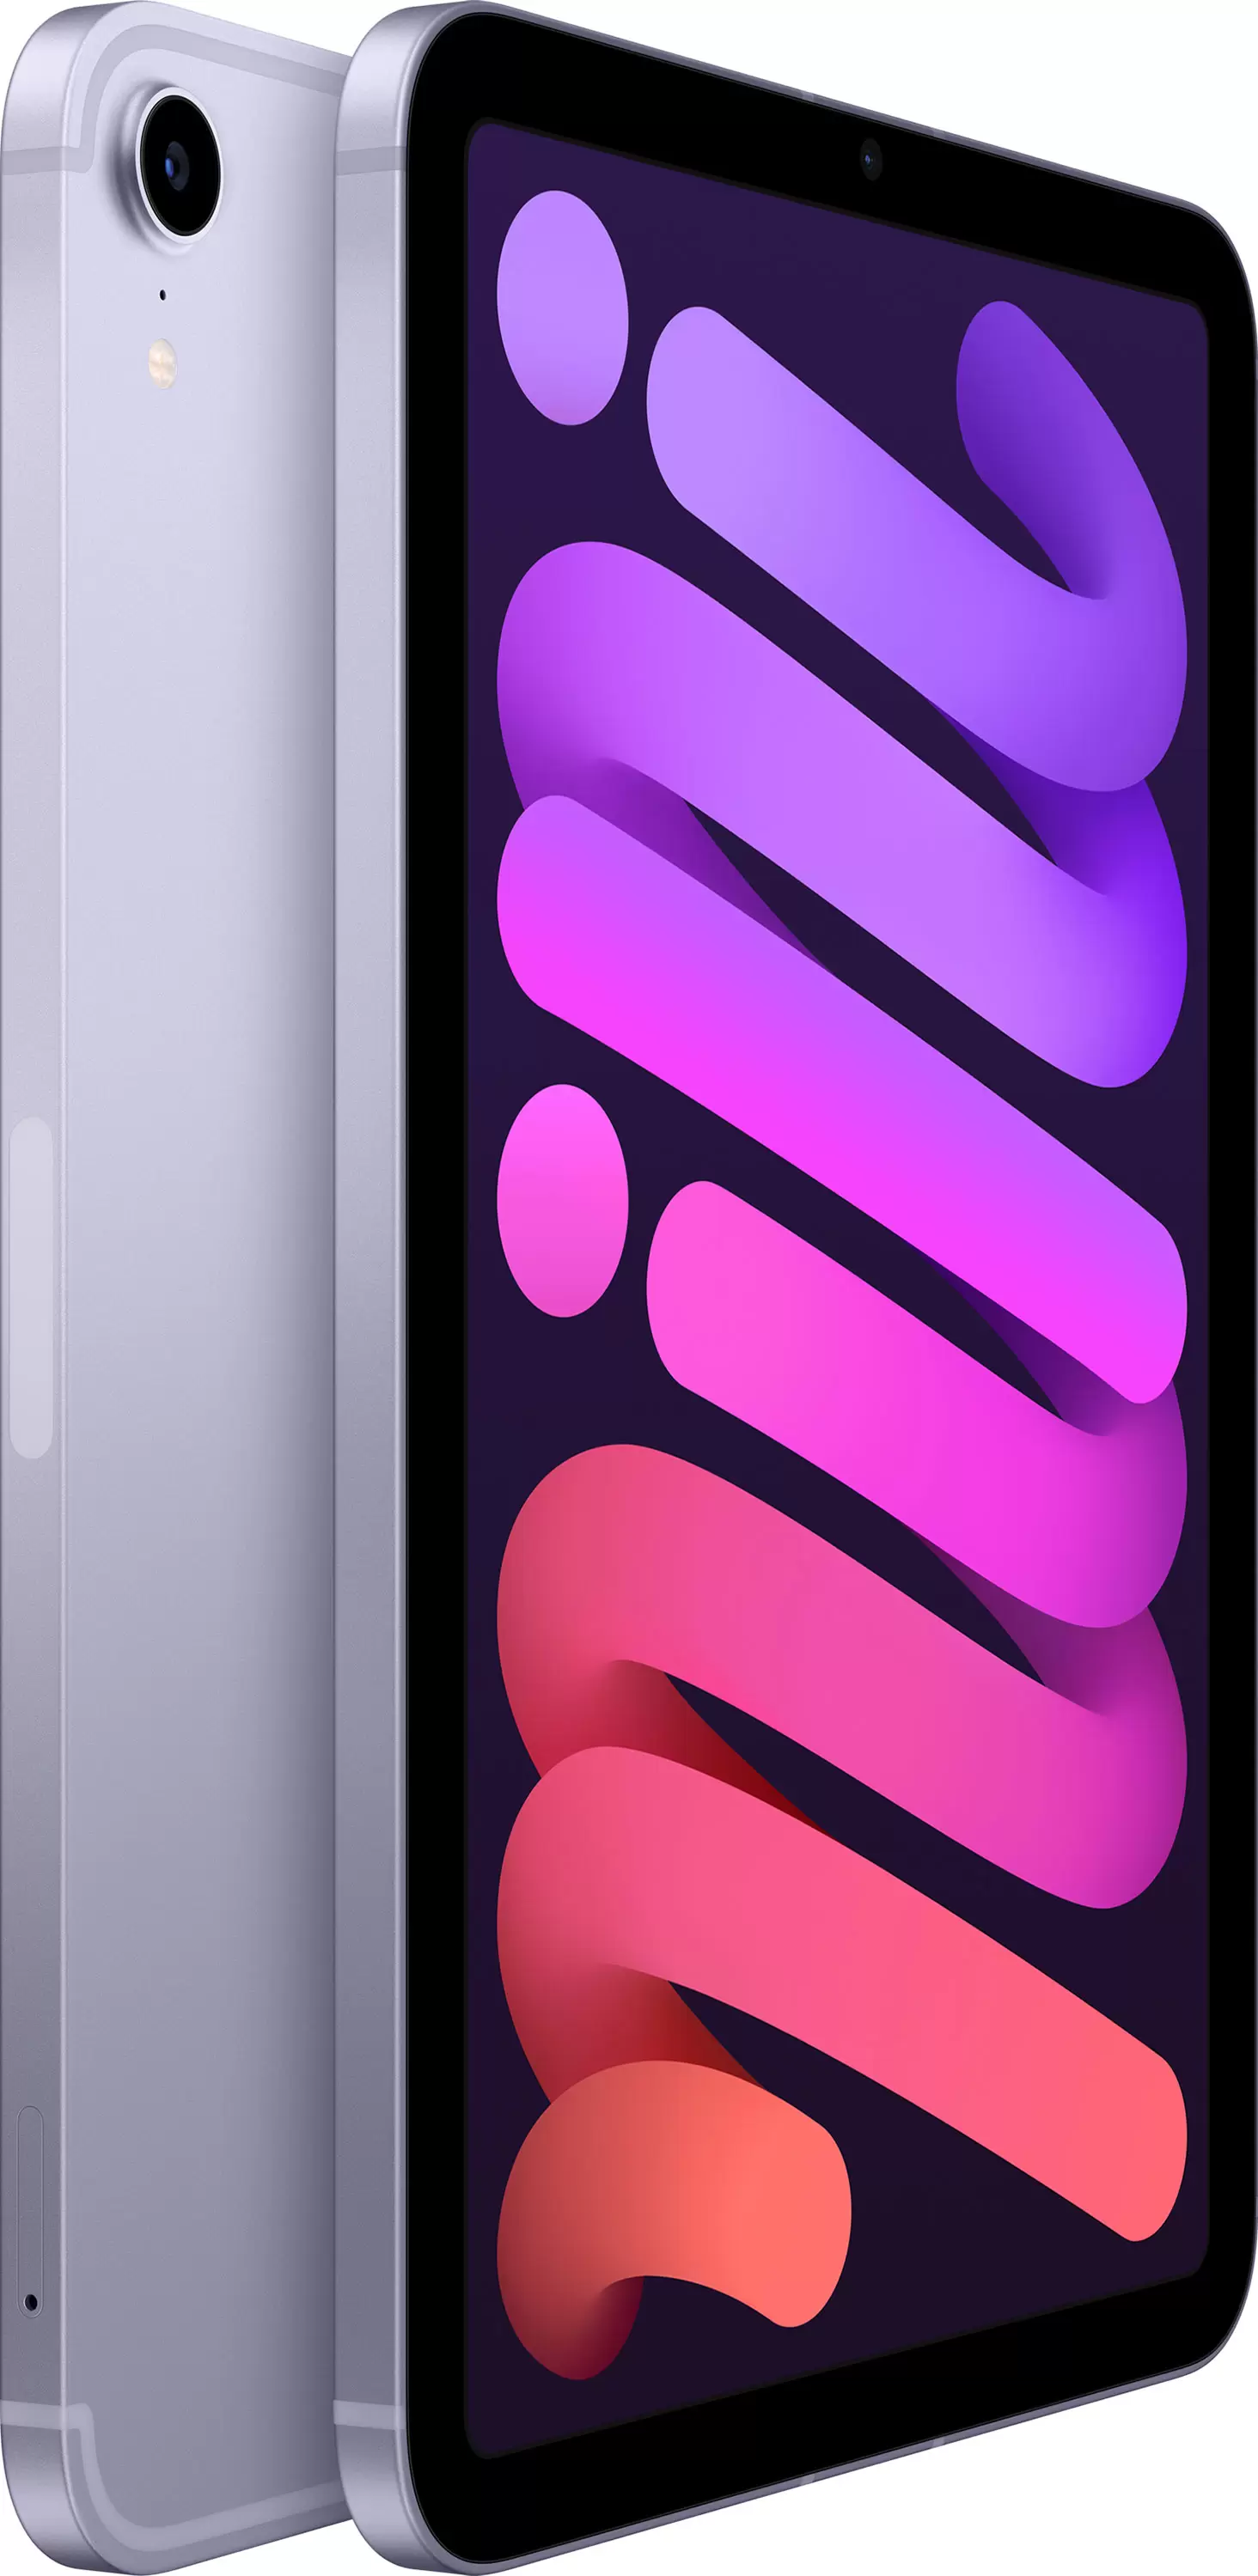 Apple iPad mini (2021) Wi-Fi 256GB (фиолетовый)